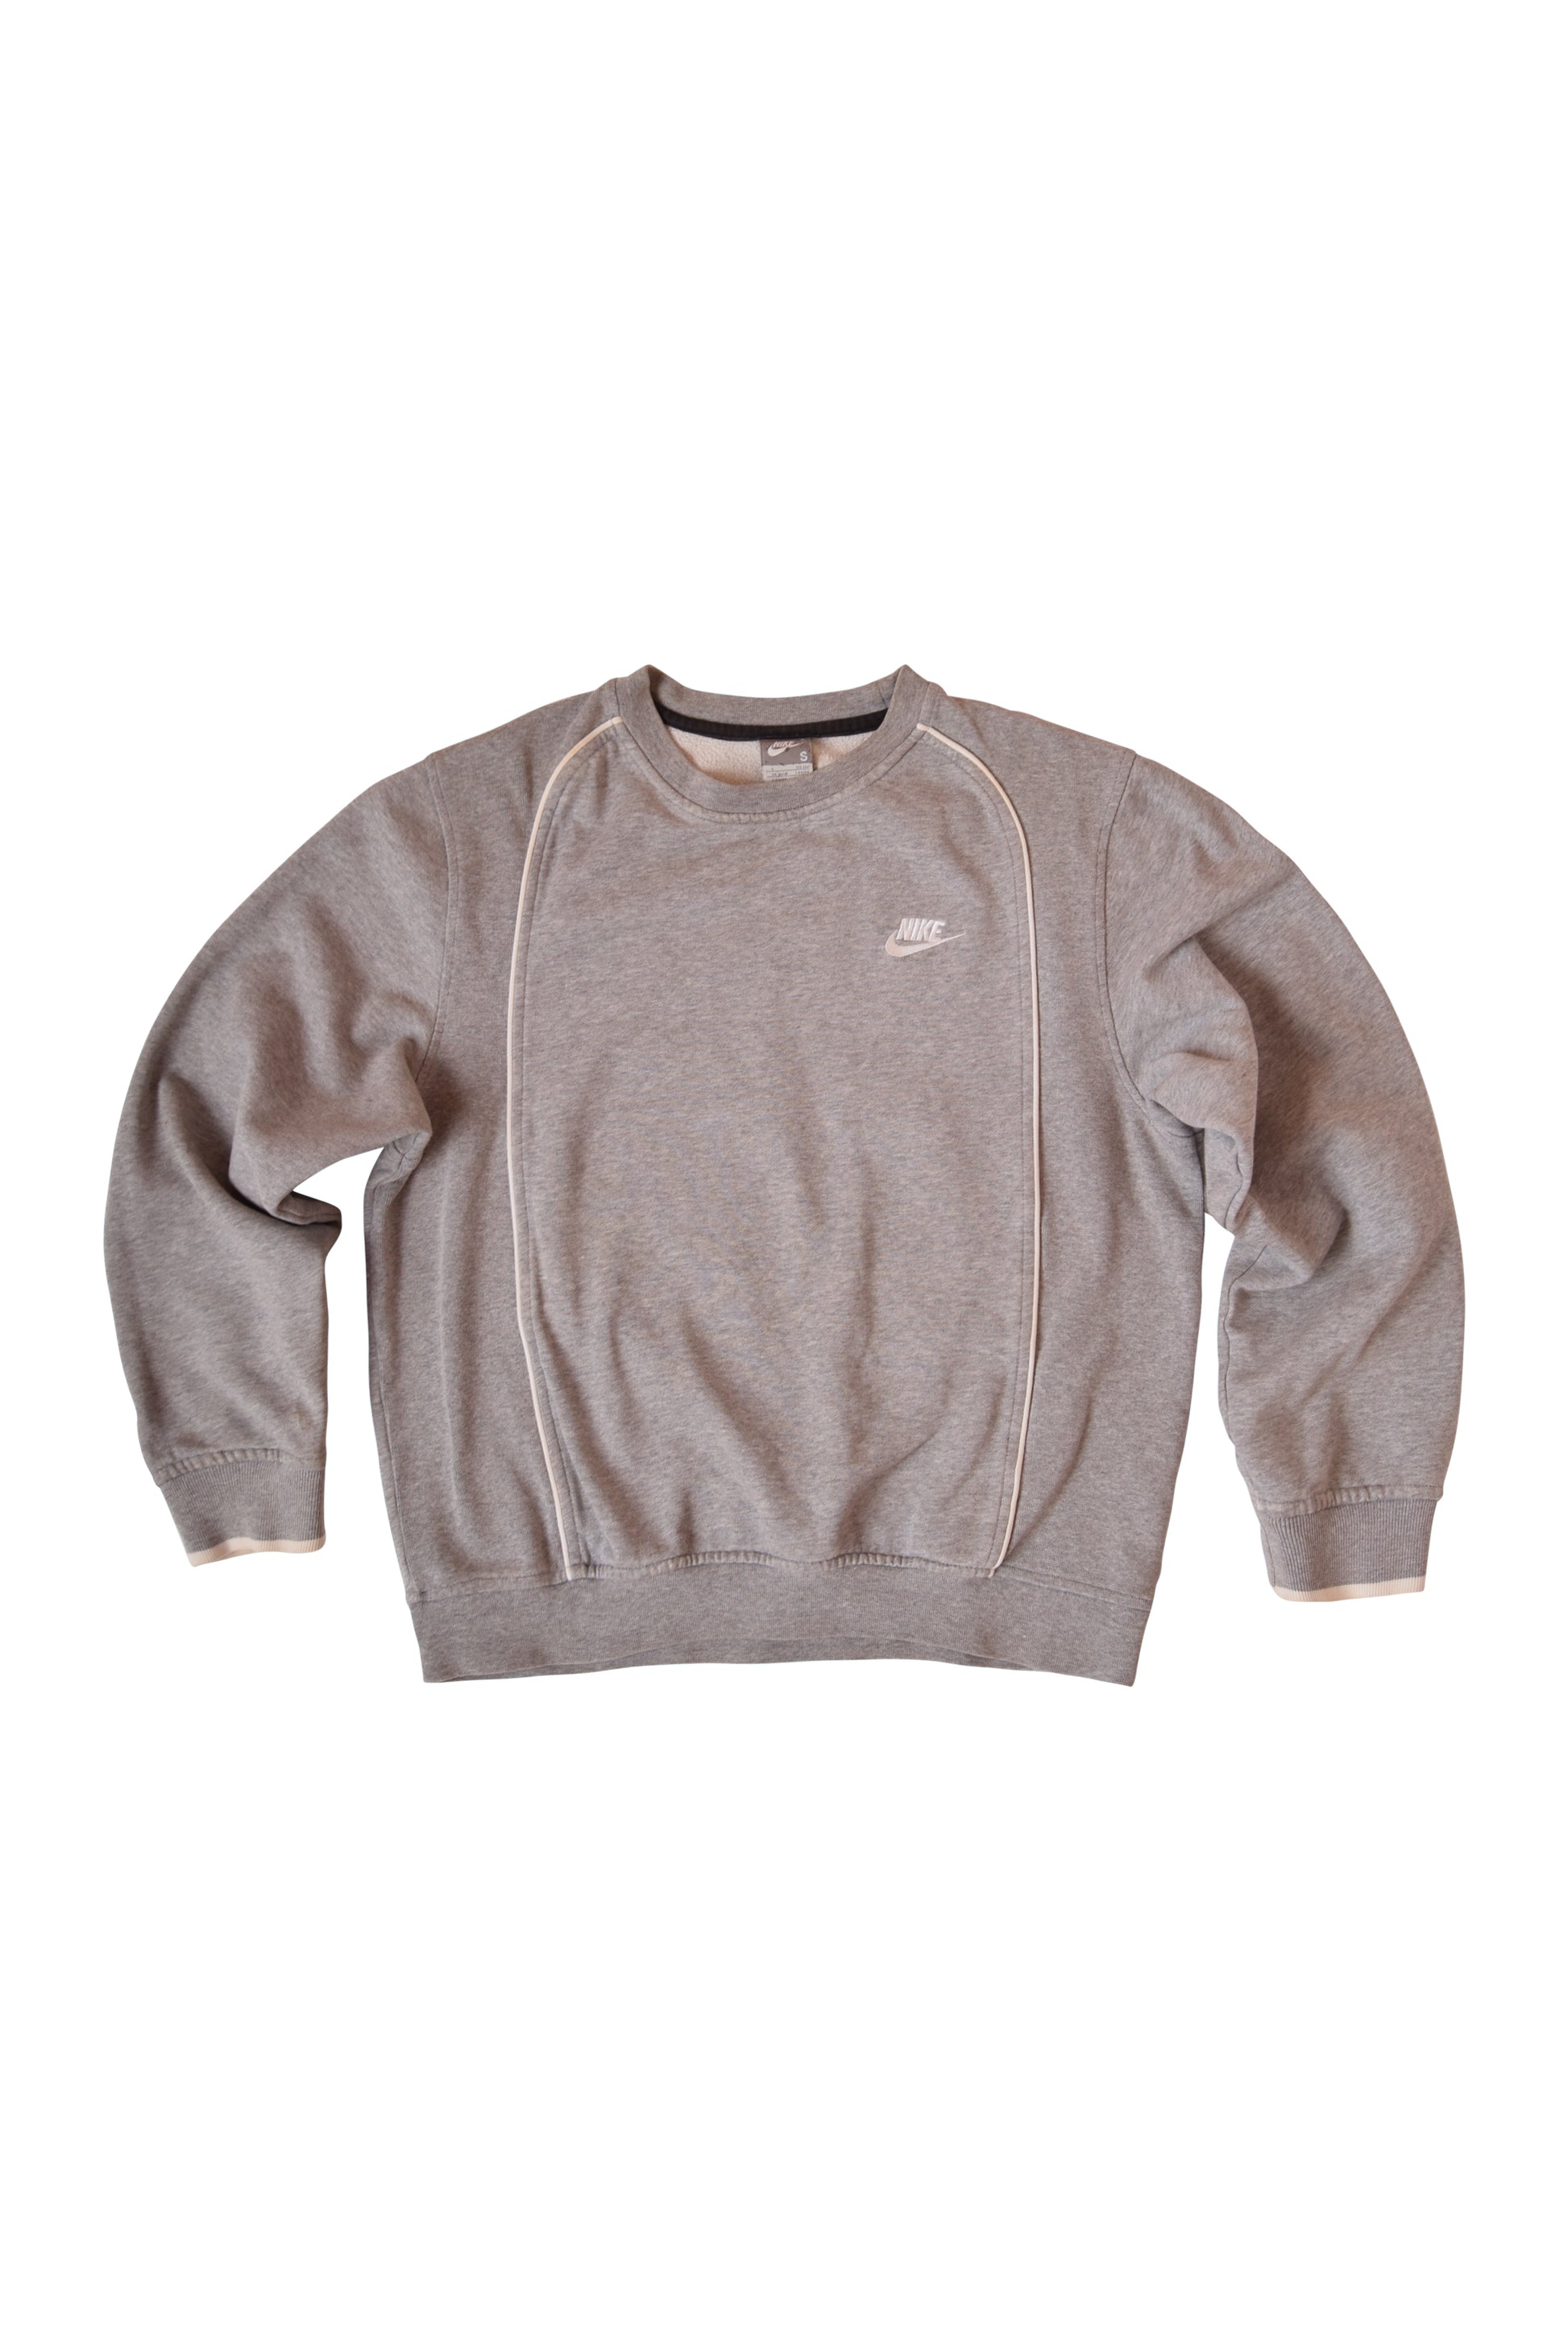 Nike Sweatshirt '00's Grey Size S